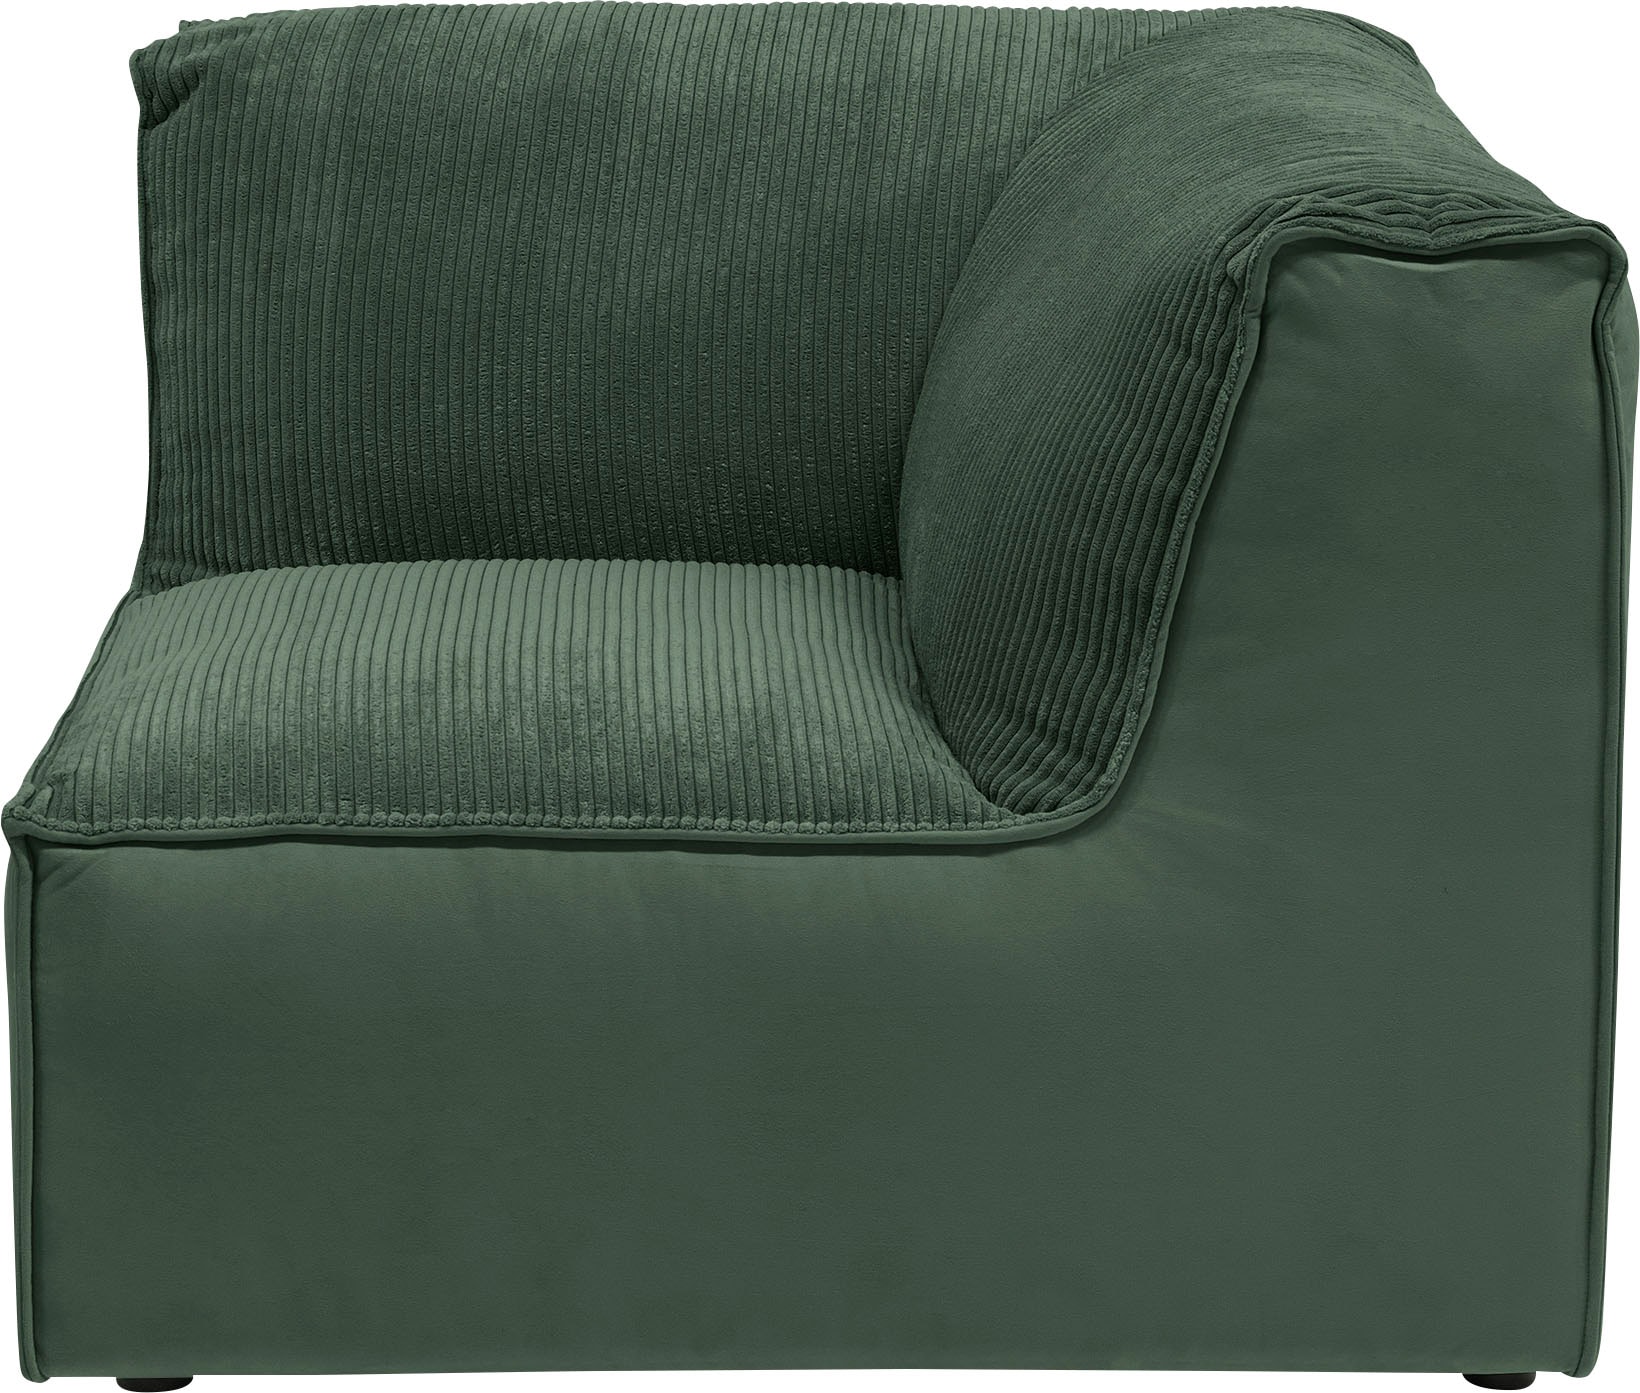 RAUM.ID Sofa-Eckelement »Modulid«, (1 St.), als Modul oder separat verwendbar, in Cord